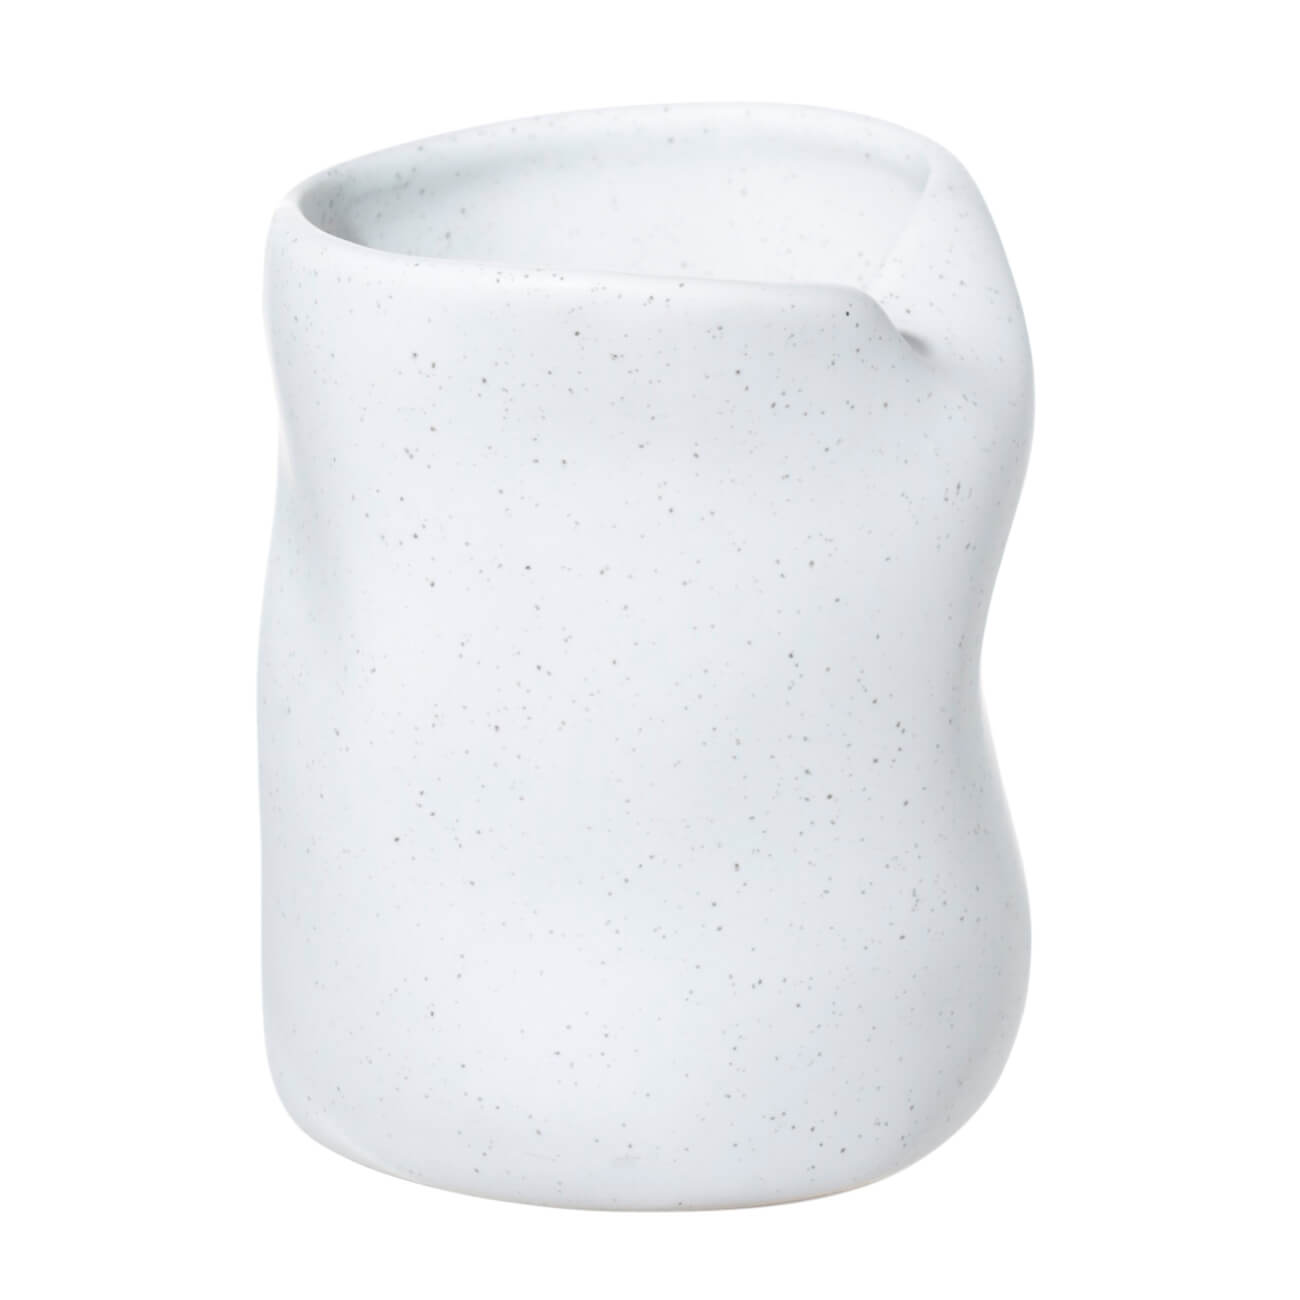 Стакан для ванной комнаты, 10 см, керамика, белый, в крапинку, Delicia настольный стакан fora tiffany керамика for tif044